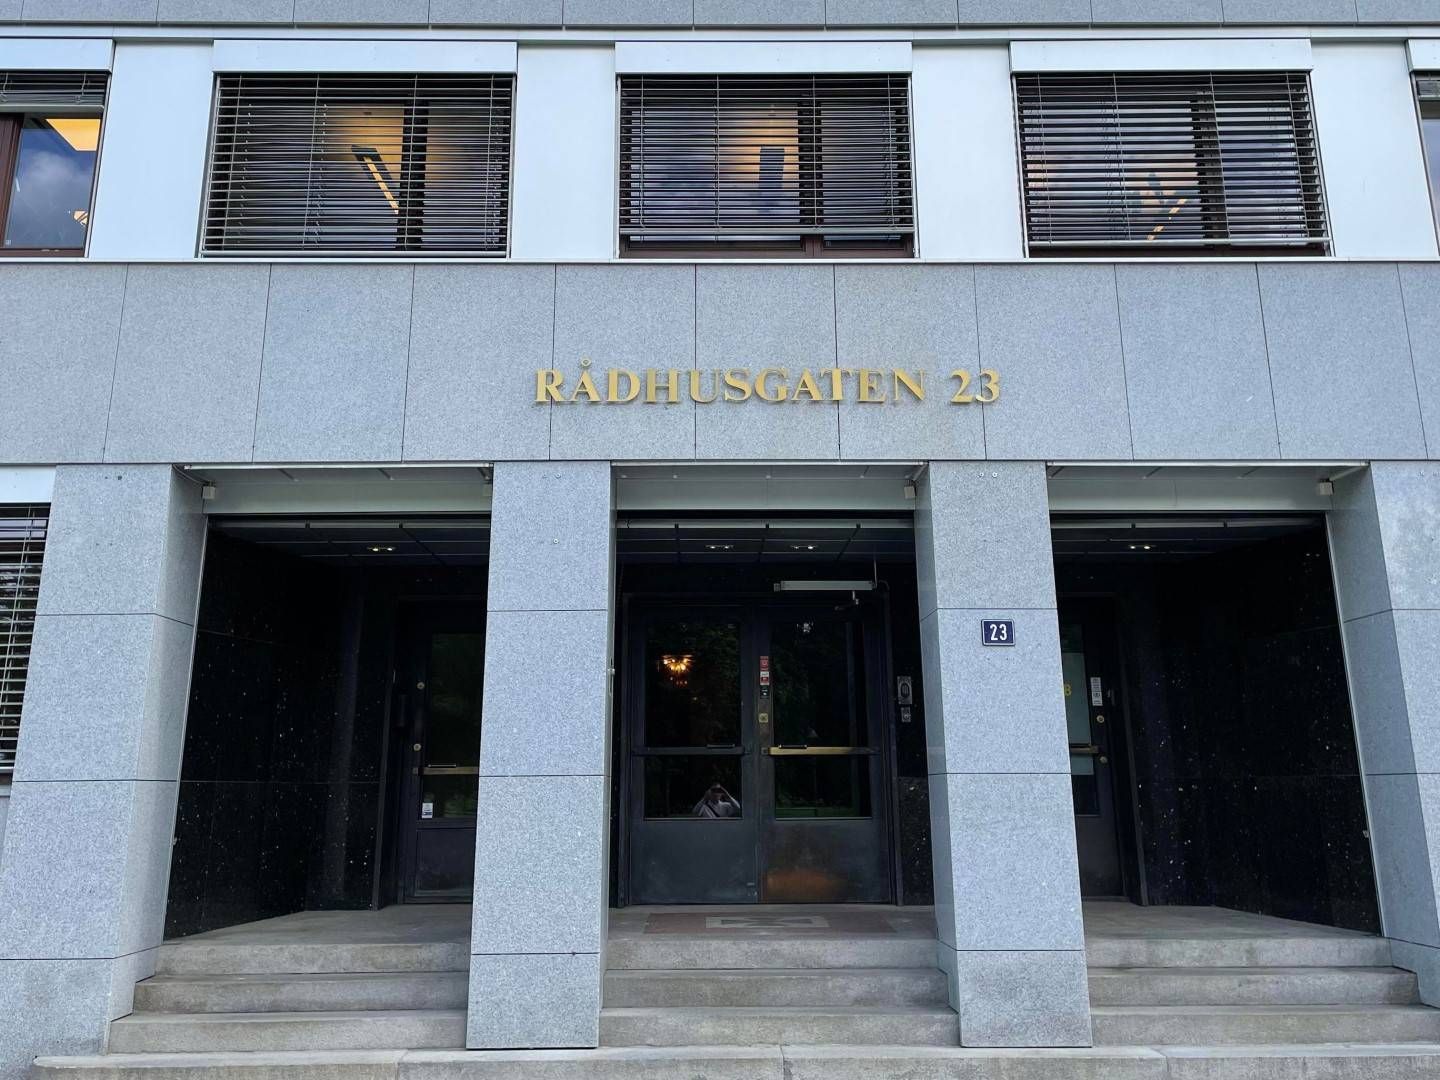 Tilsynsrådet holder til i Rådhusgata 23 i Oslo. | Foto: Stian Olsen / AdvokatWatch